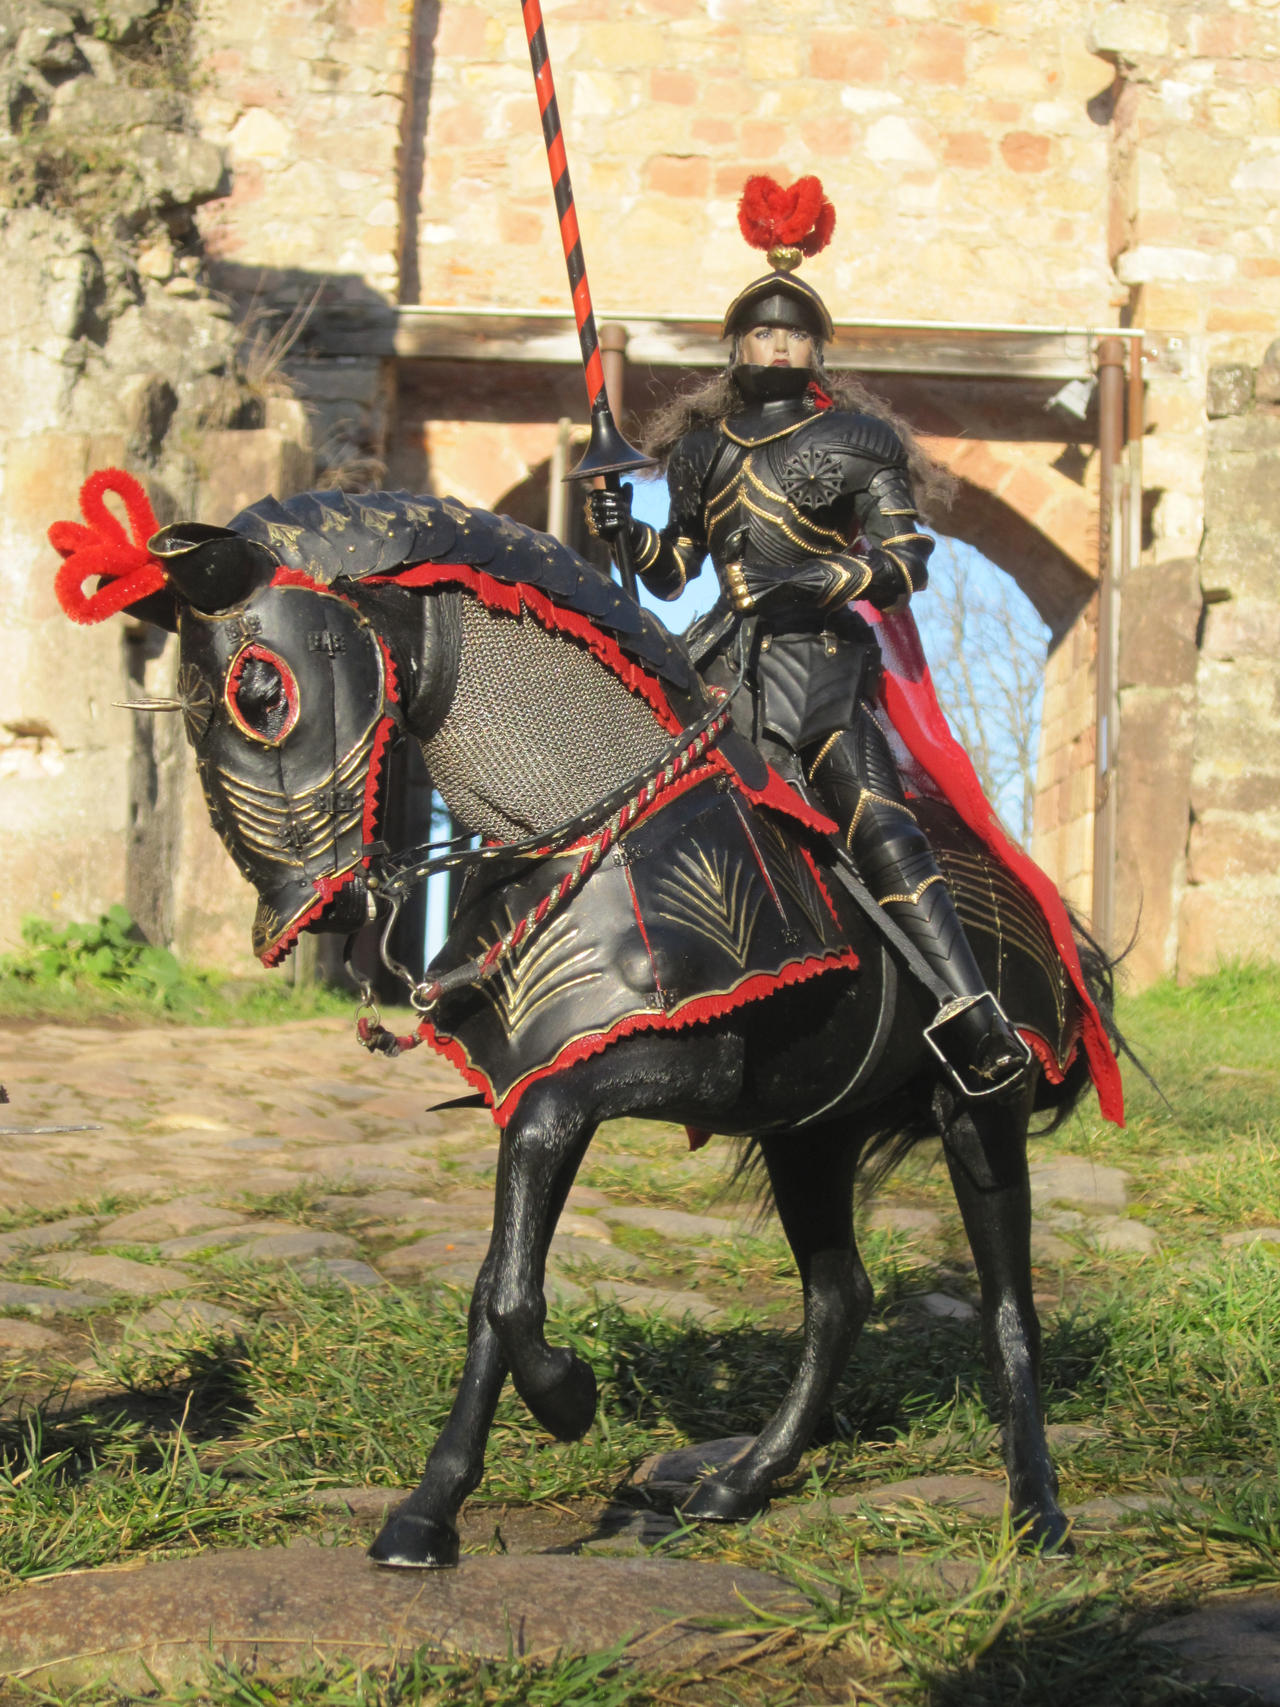 armure de cheval gothique Gothic_horse_bard_30_by_tomhil_dfp69h3-fullview.jpg?token=eyJ0eXAiOiJKV1QiLCJhbGciOiJIUzI1NiJ9.eyJzdWIiOiJ1cm46YXBwOjdlMGQxODg5ODIyNjQzNzNhNWYwZDQxNWVhMGQyNmUwIiwiaXNzIjoidXJuOmFwcDo3ZTBkMTg4OTgyMjY0MzczYTVmMGQ0MTVlYTBkMjZlMCIsIm9iaiI6W1t7ImhlaWdodCI6Ijw9MTcwNyIsInBhdGgiOiJcL2ZcLzc4ZjdjOTM3LTcyYWItNDVlNy04MmIwLWY4NGZhMDIyOGM0MlwvZGZwNjloMy02OTA0ZGZlMS05ZDA2LTQ4MTQtOTA5NC05NDQ0M2JmYzk2ZDQuanBnIiwid2lkdGgiOiI8PTEyODAifV1dLCJhdWQiOlsidXJuOnNlcnZpY2U6aW1hZ2Uub3BlcmF0aW9ucyJdfQ